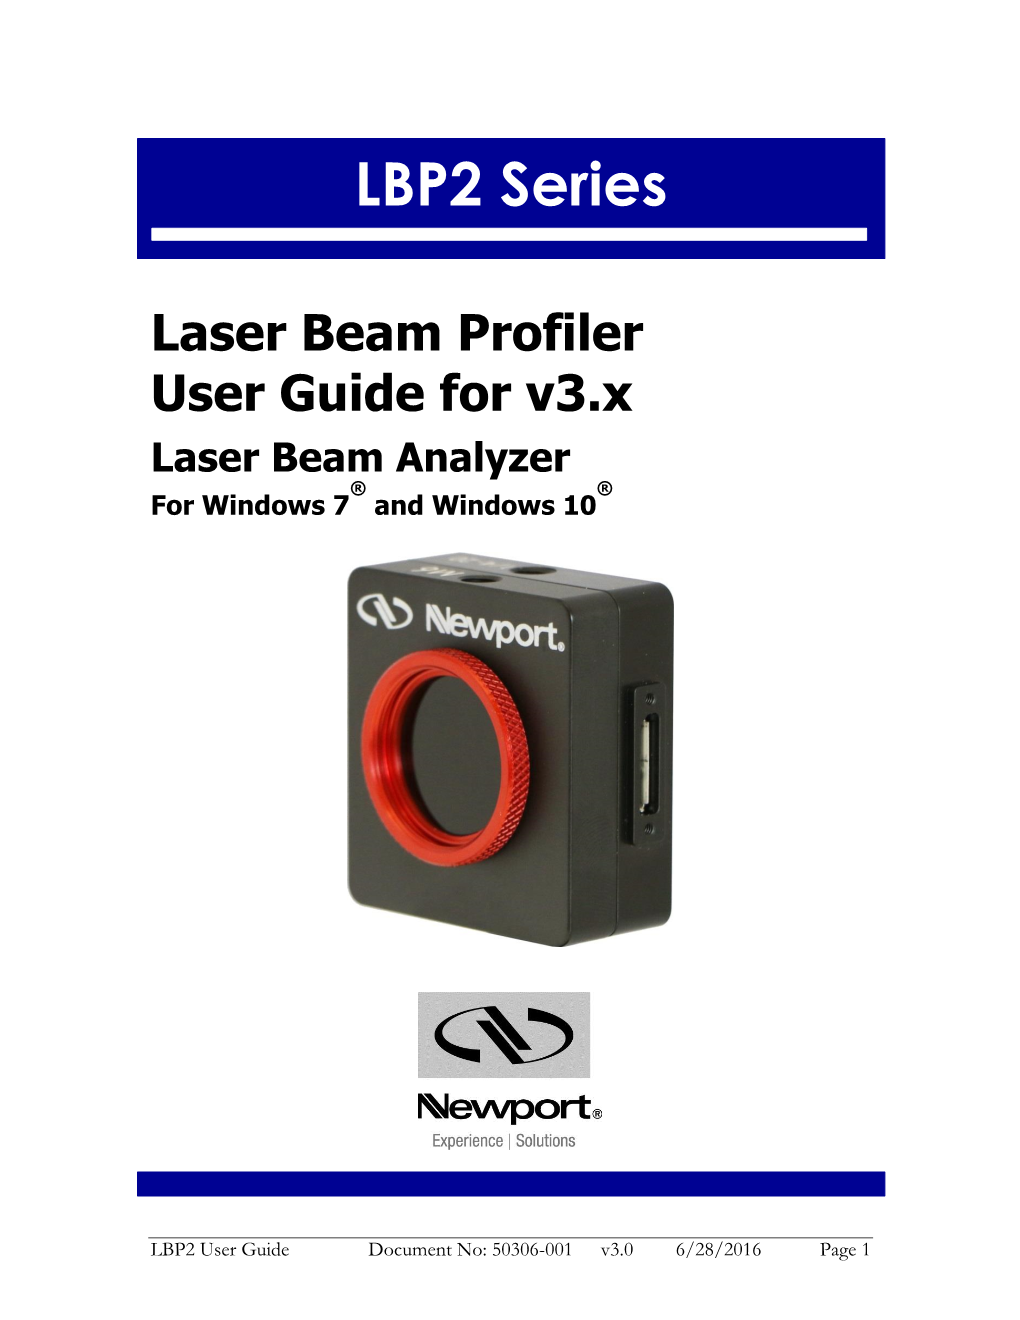 LBP2 Laser Beam Profilers User Manual